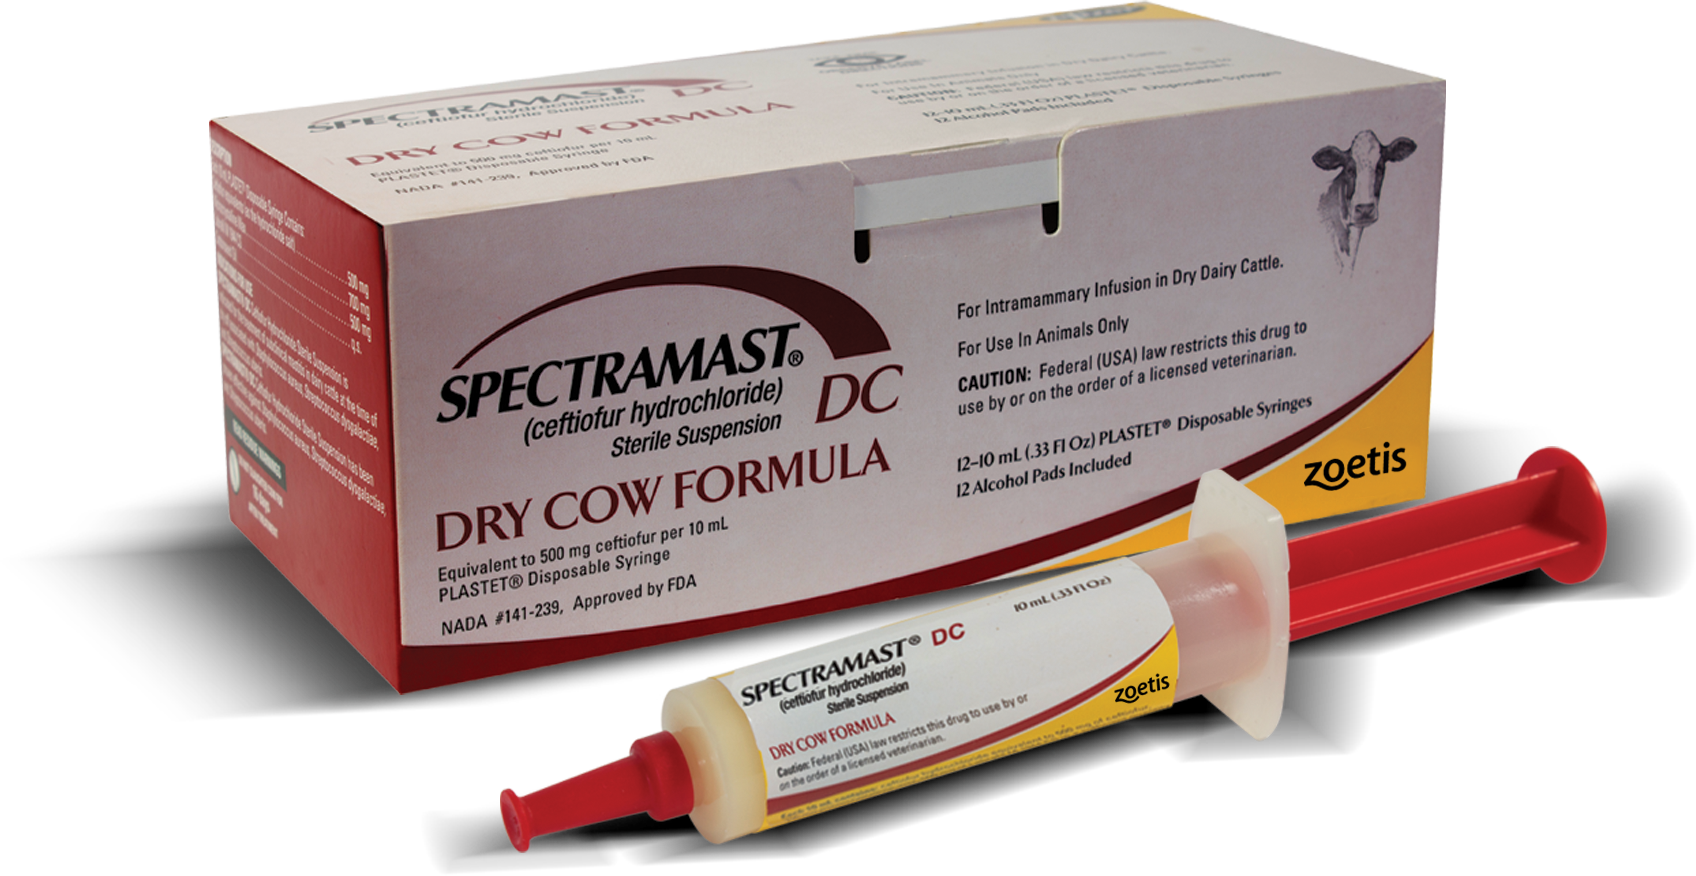  Spectramast® DC (ceftiofur hydrochloride)Sterile Suspension